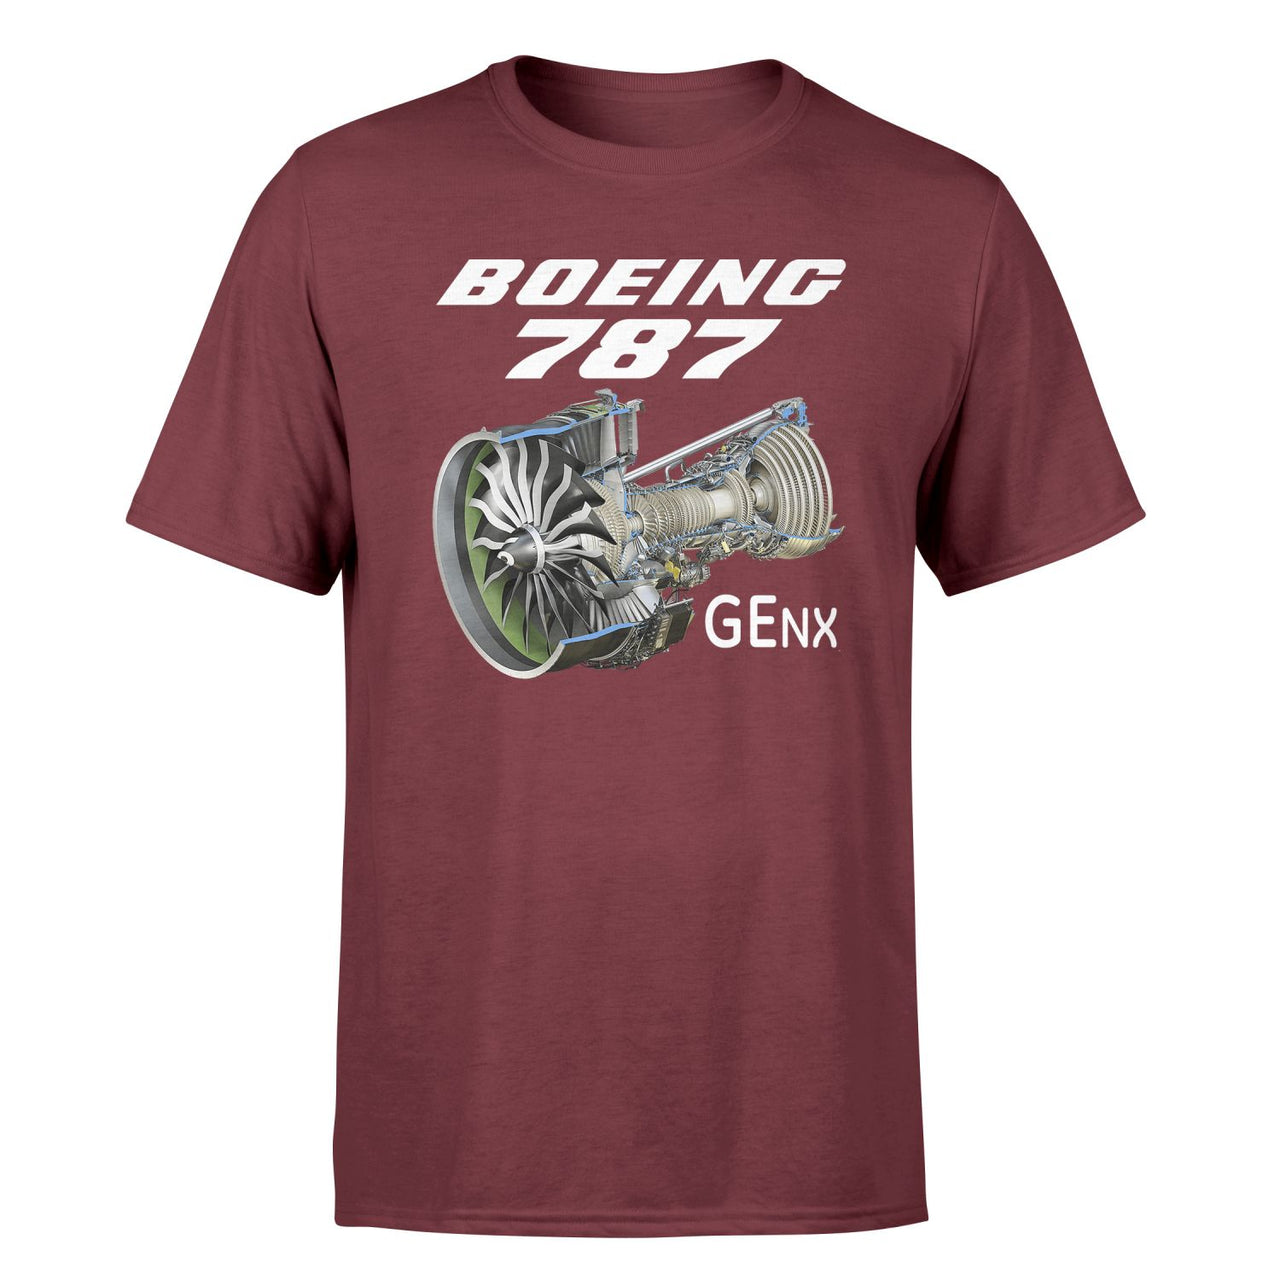 Boeing 787 & GENX Engine Designed T-Shirts